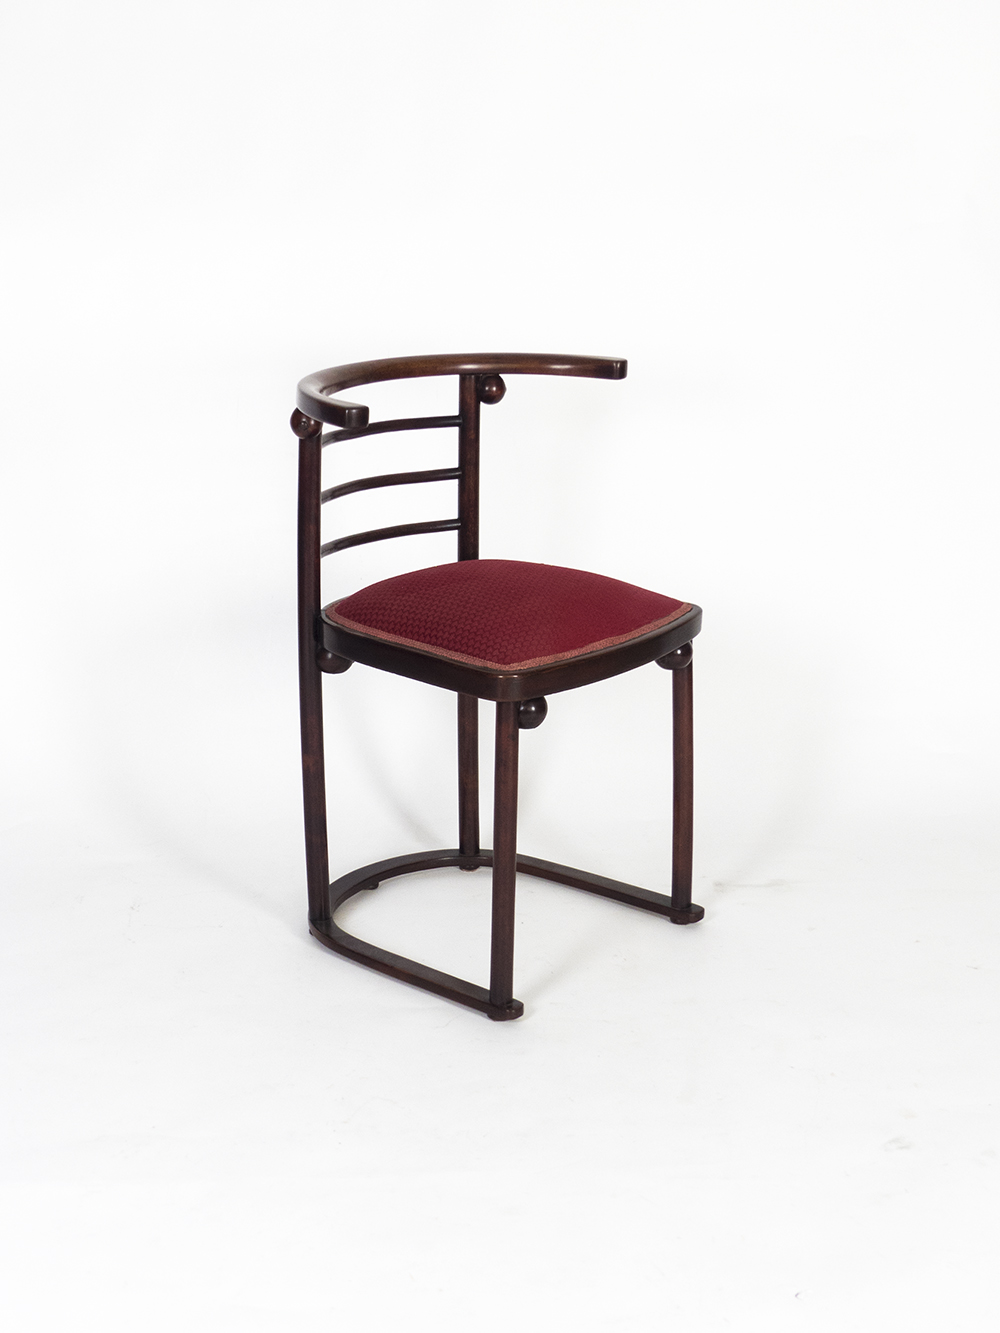 Mod. 728 “Fledermaus” chair for J & J Kohn by Joef Hoffman & Gustav Siegel  | 1+1 design gallery